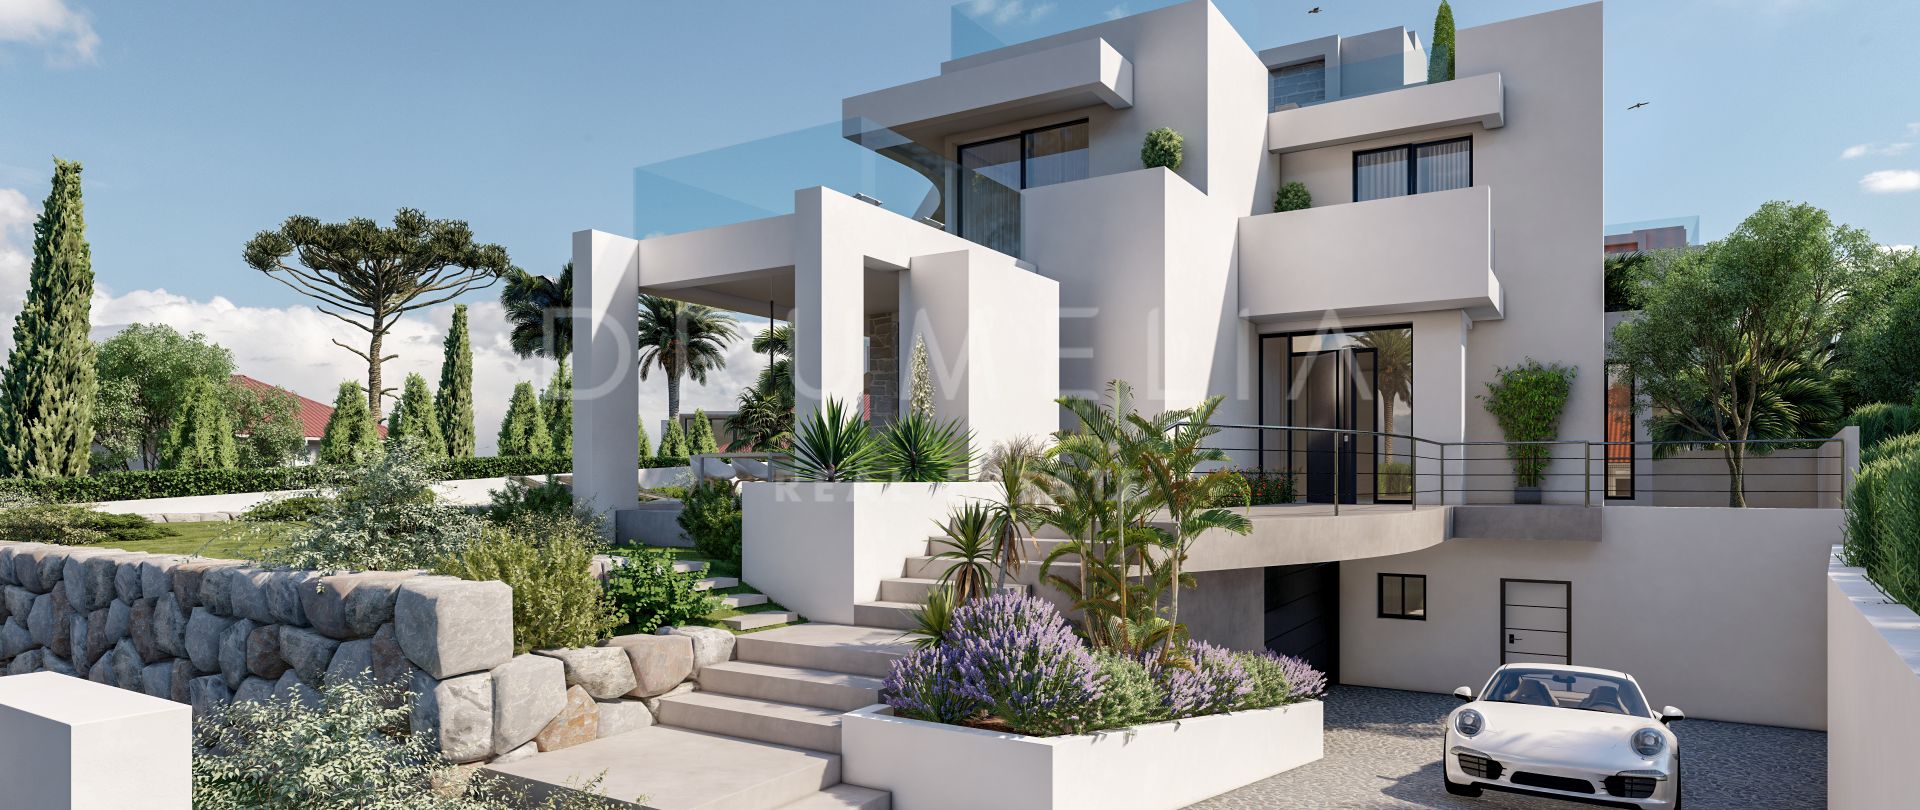 Espectacular villa moderna de lujo a estrenar en Marbesa, Marbella Este